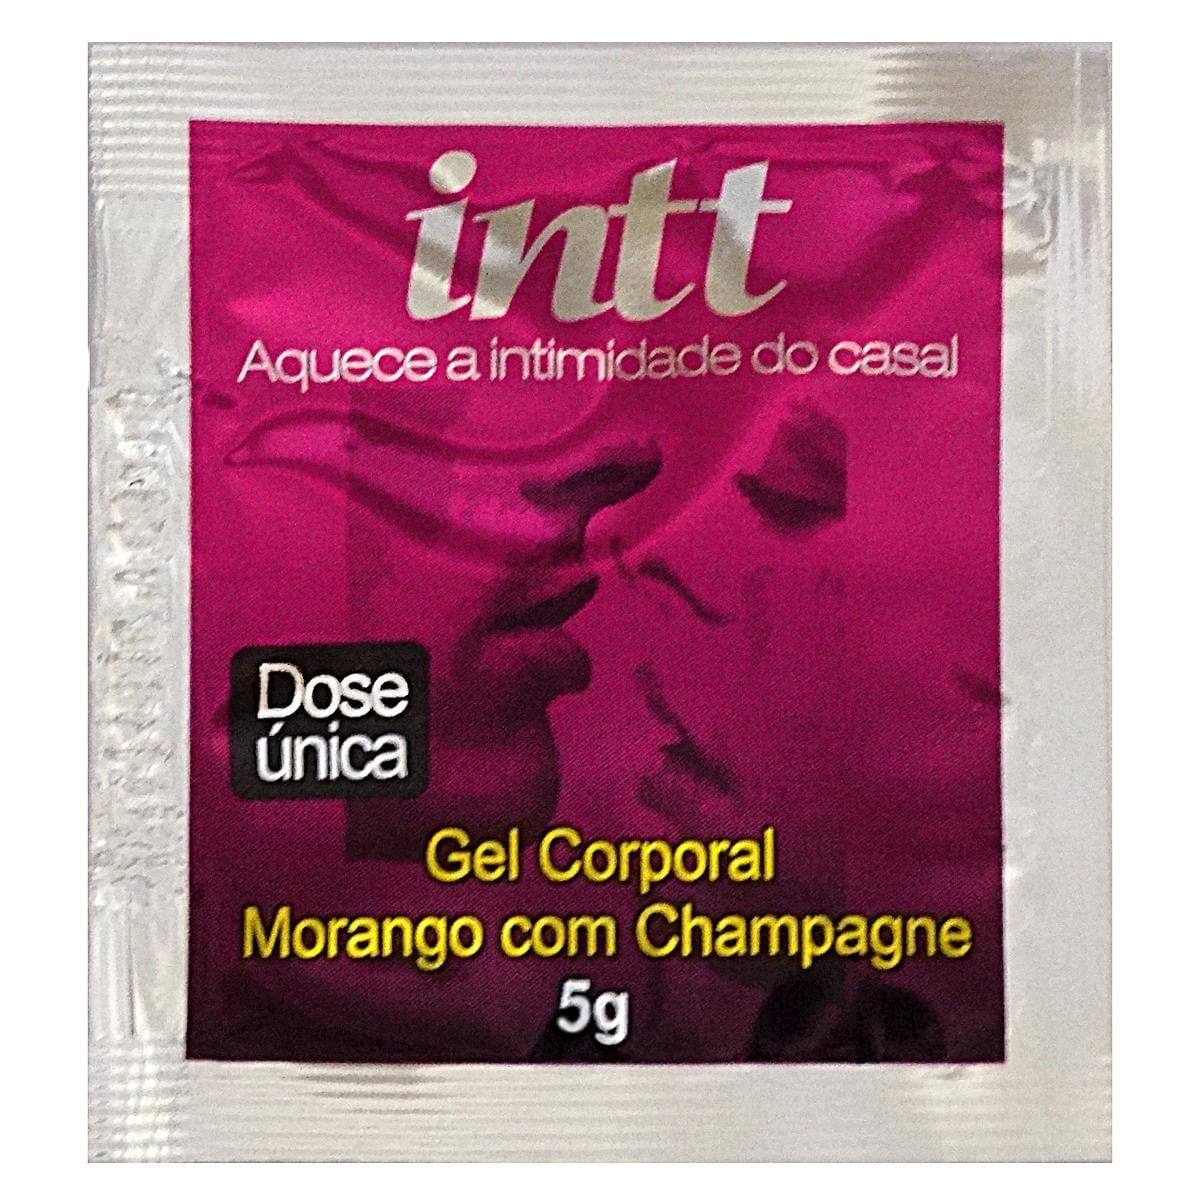 Gel Morango com Champagne Dose Única 5g INTT - Consumir até: 07/2017